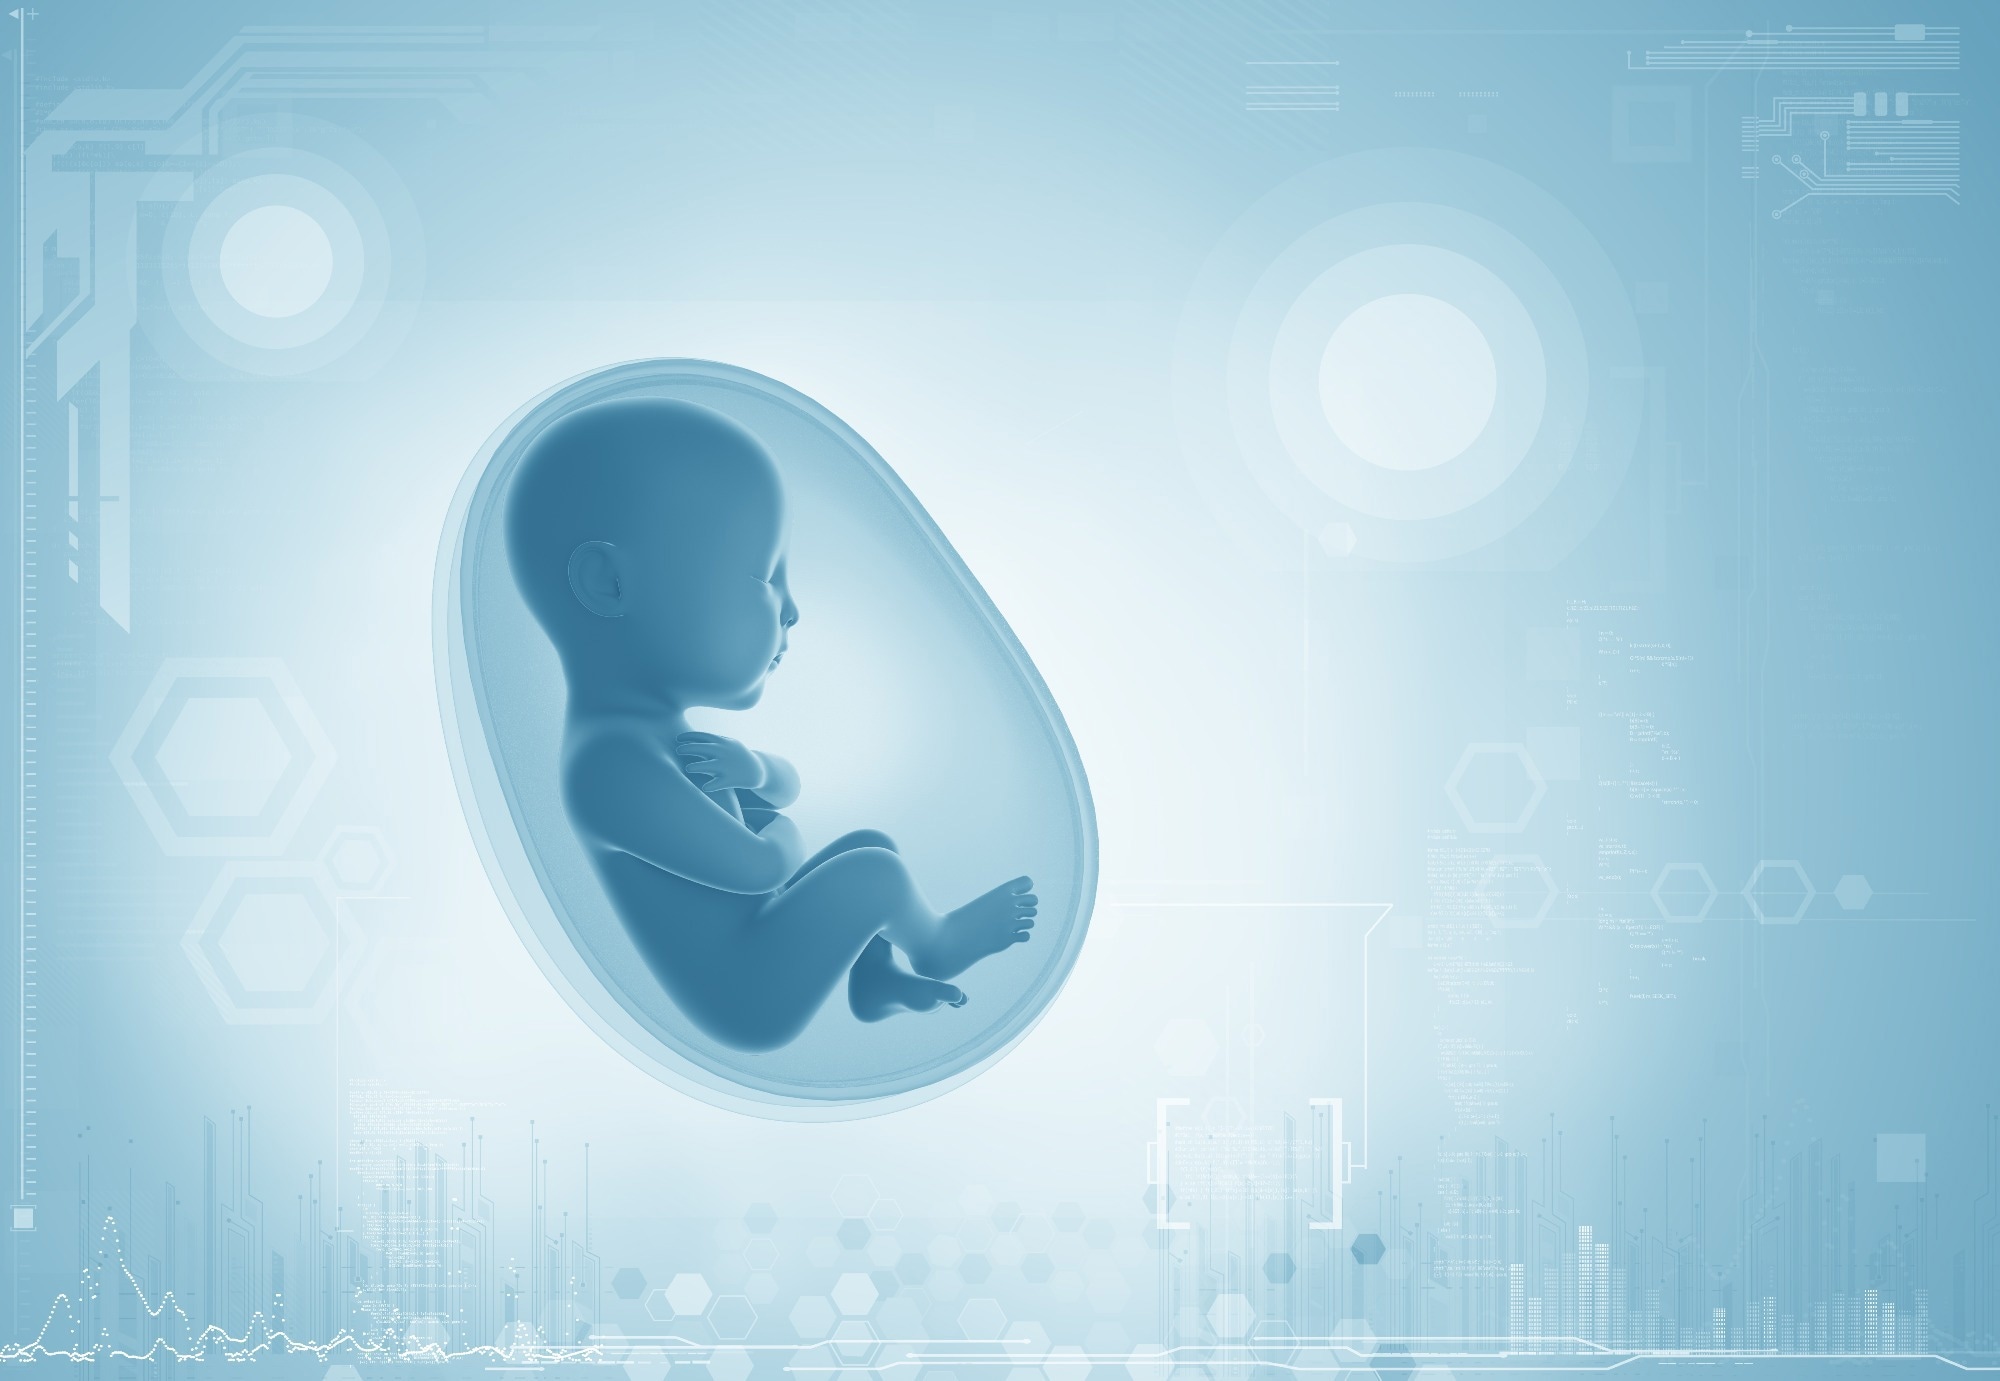 مطالعه: پیامدهای رشد عصبی خاص جنسی در فرزندان مادران مبتلا به SARS-CoV-2 در بارداری: یک گروه پرونده الکترونیک سلامت.  اعتبار تصویر: adike/Shutterstock